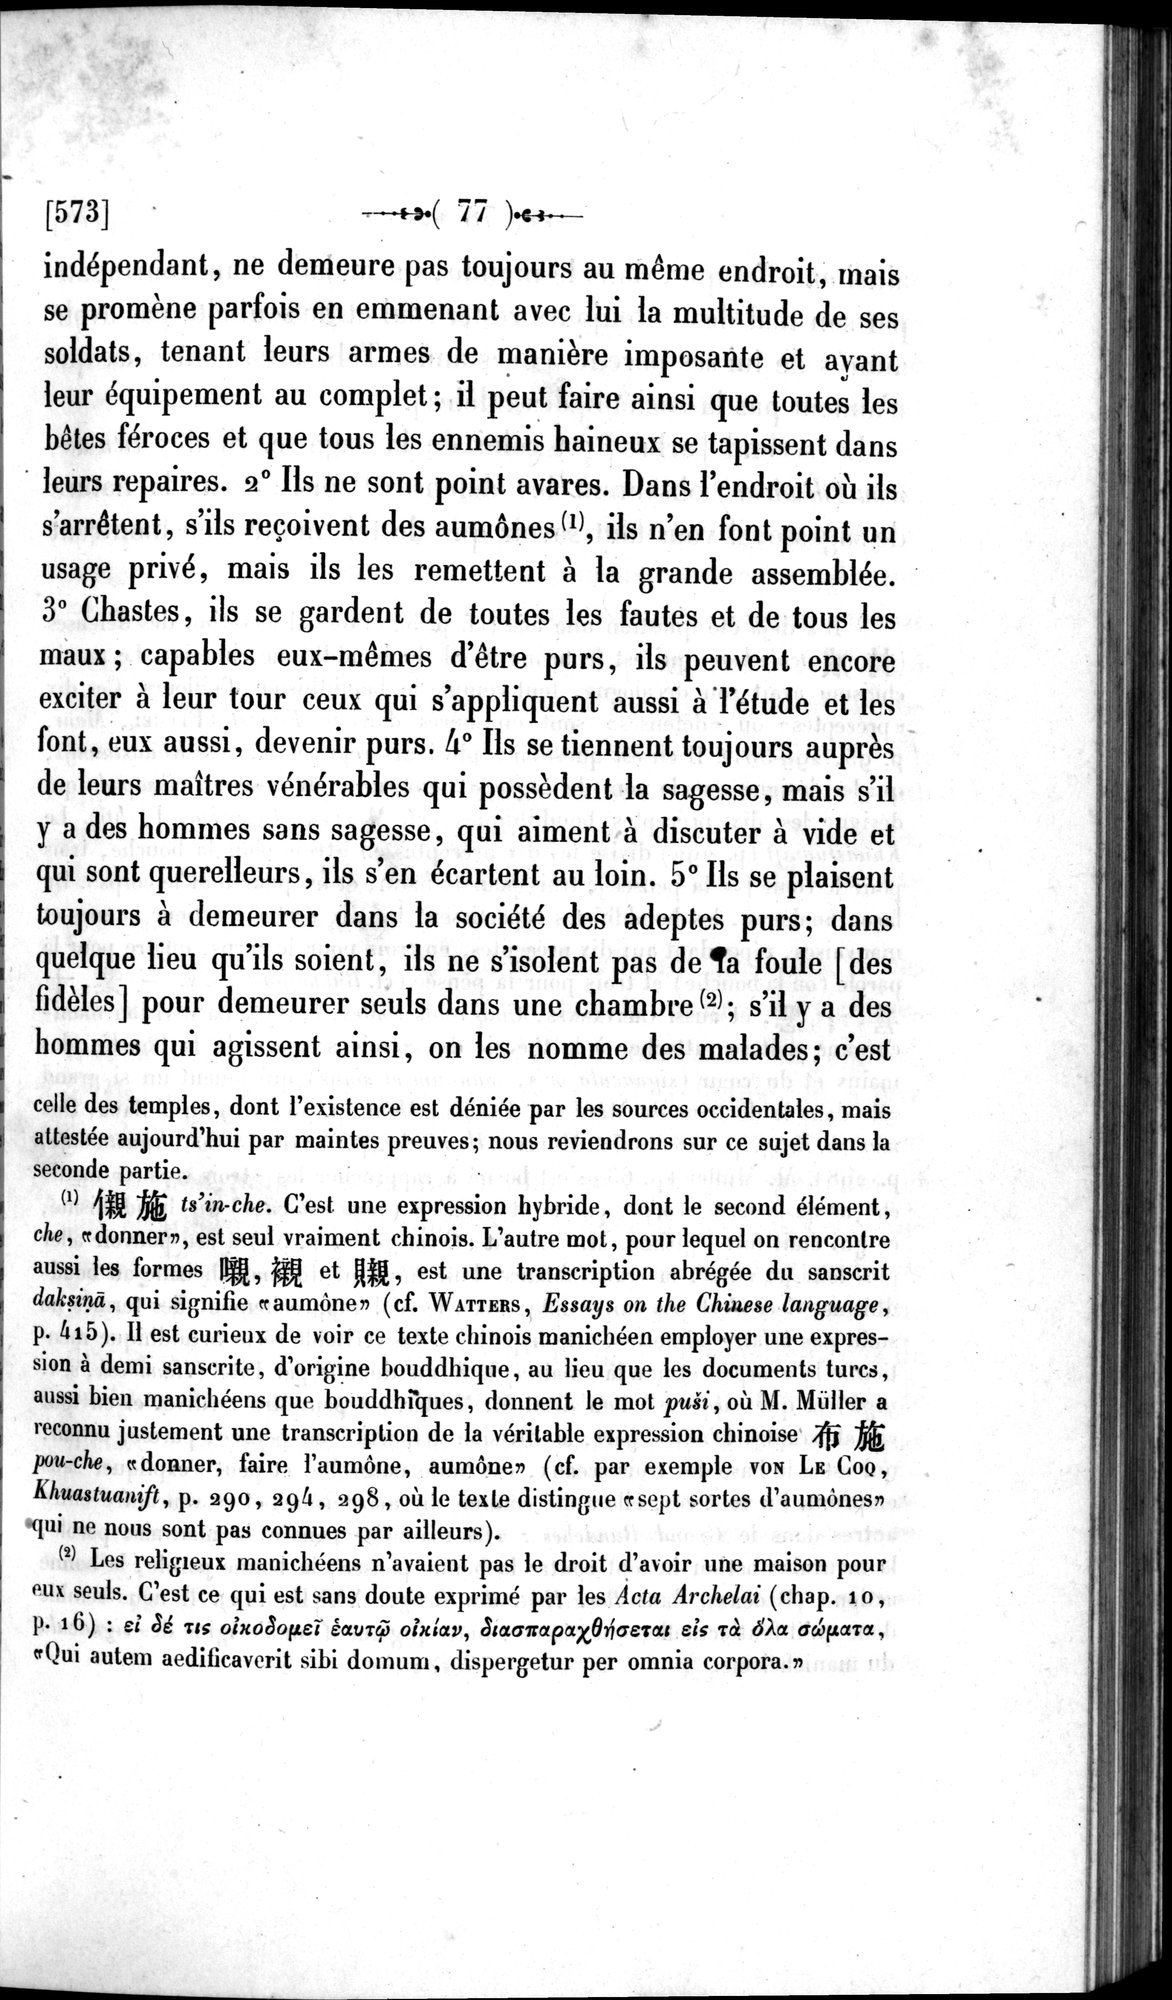 Un traité manichéen retrouvé en Chine : vol.1 / Page 87 (Grayscale High Resolution Image)